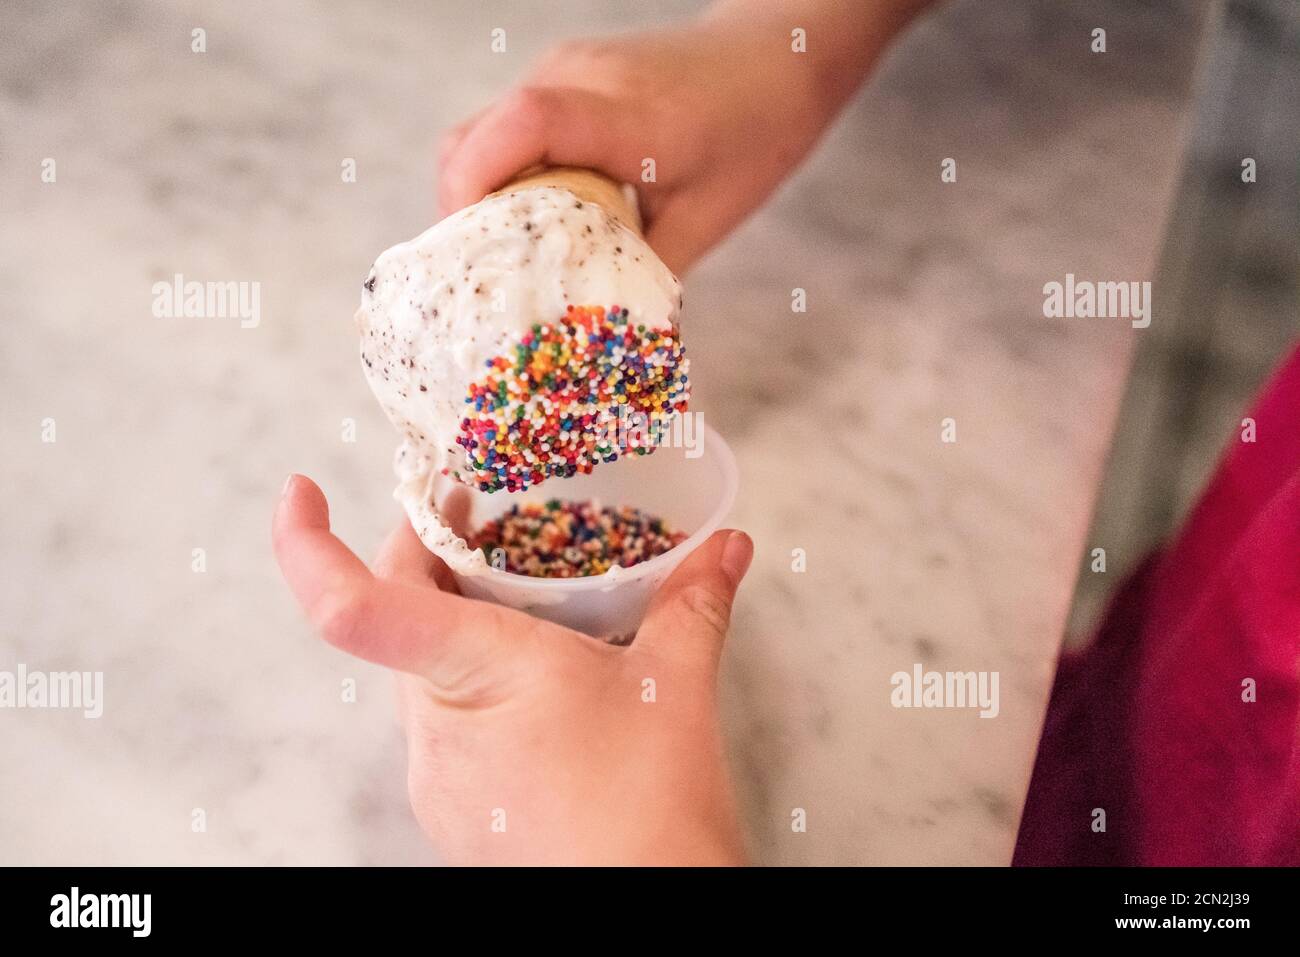 une jeune fille trempent son cône de crème glacée dans un contenant de saupoudrer de couleur Banque D'Images